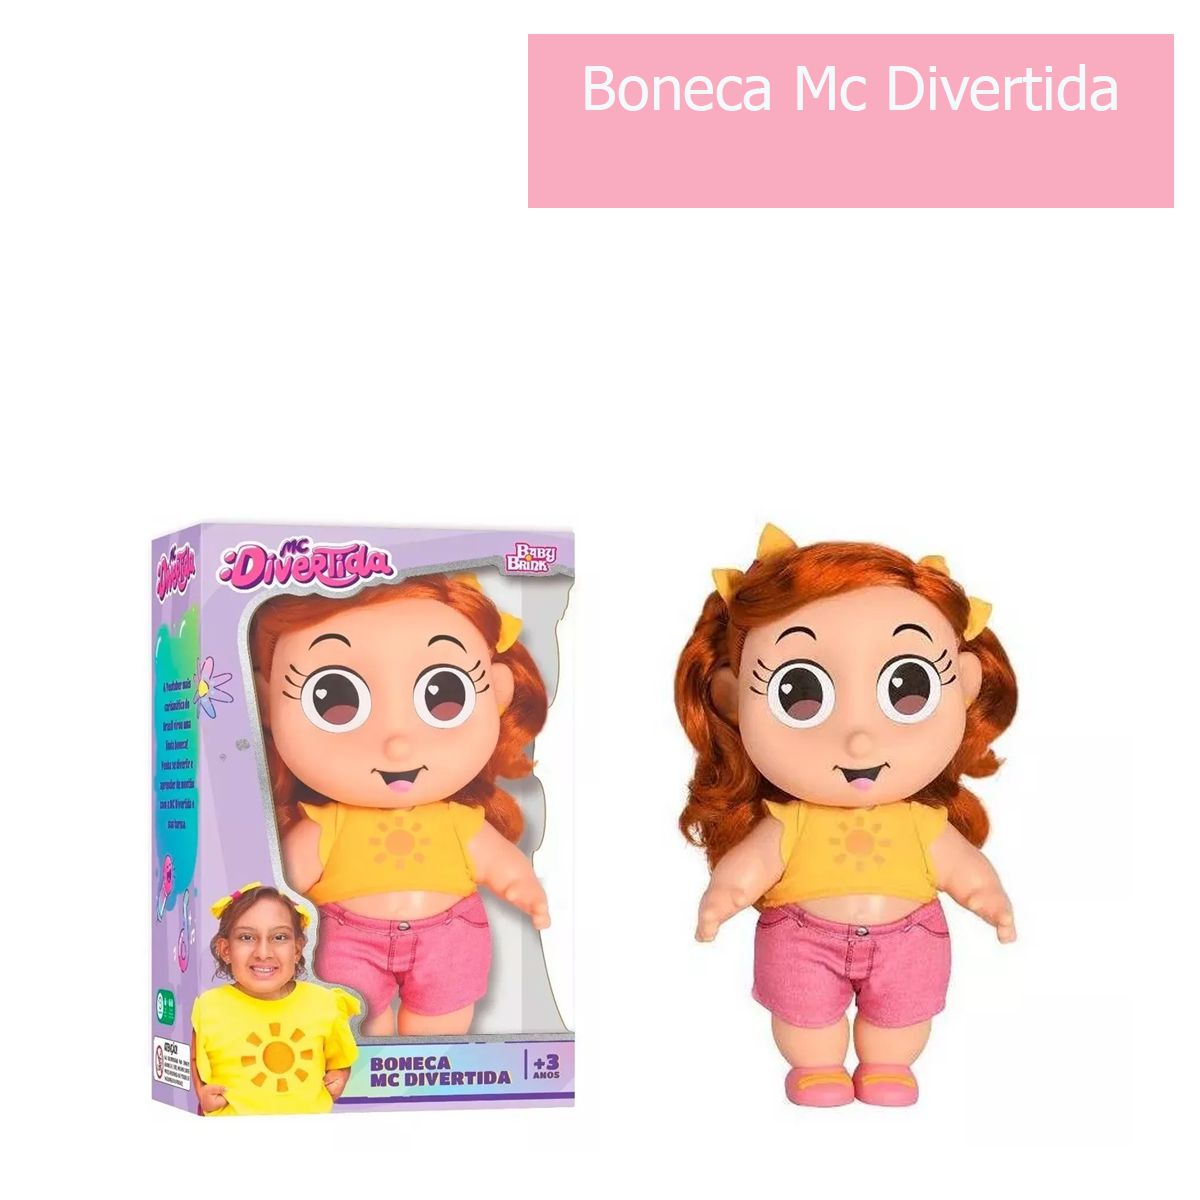 Boneca Mc Divertida r Maria Clara Original Baby Brink